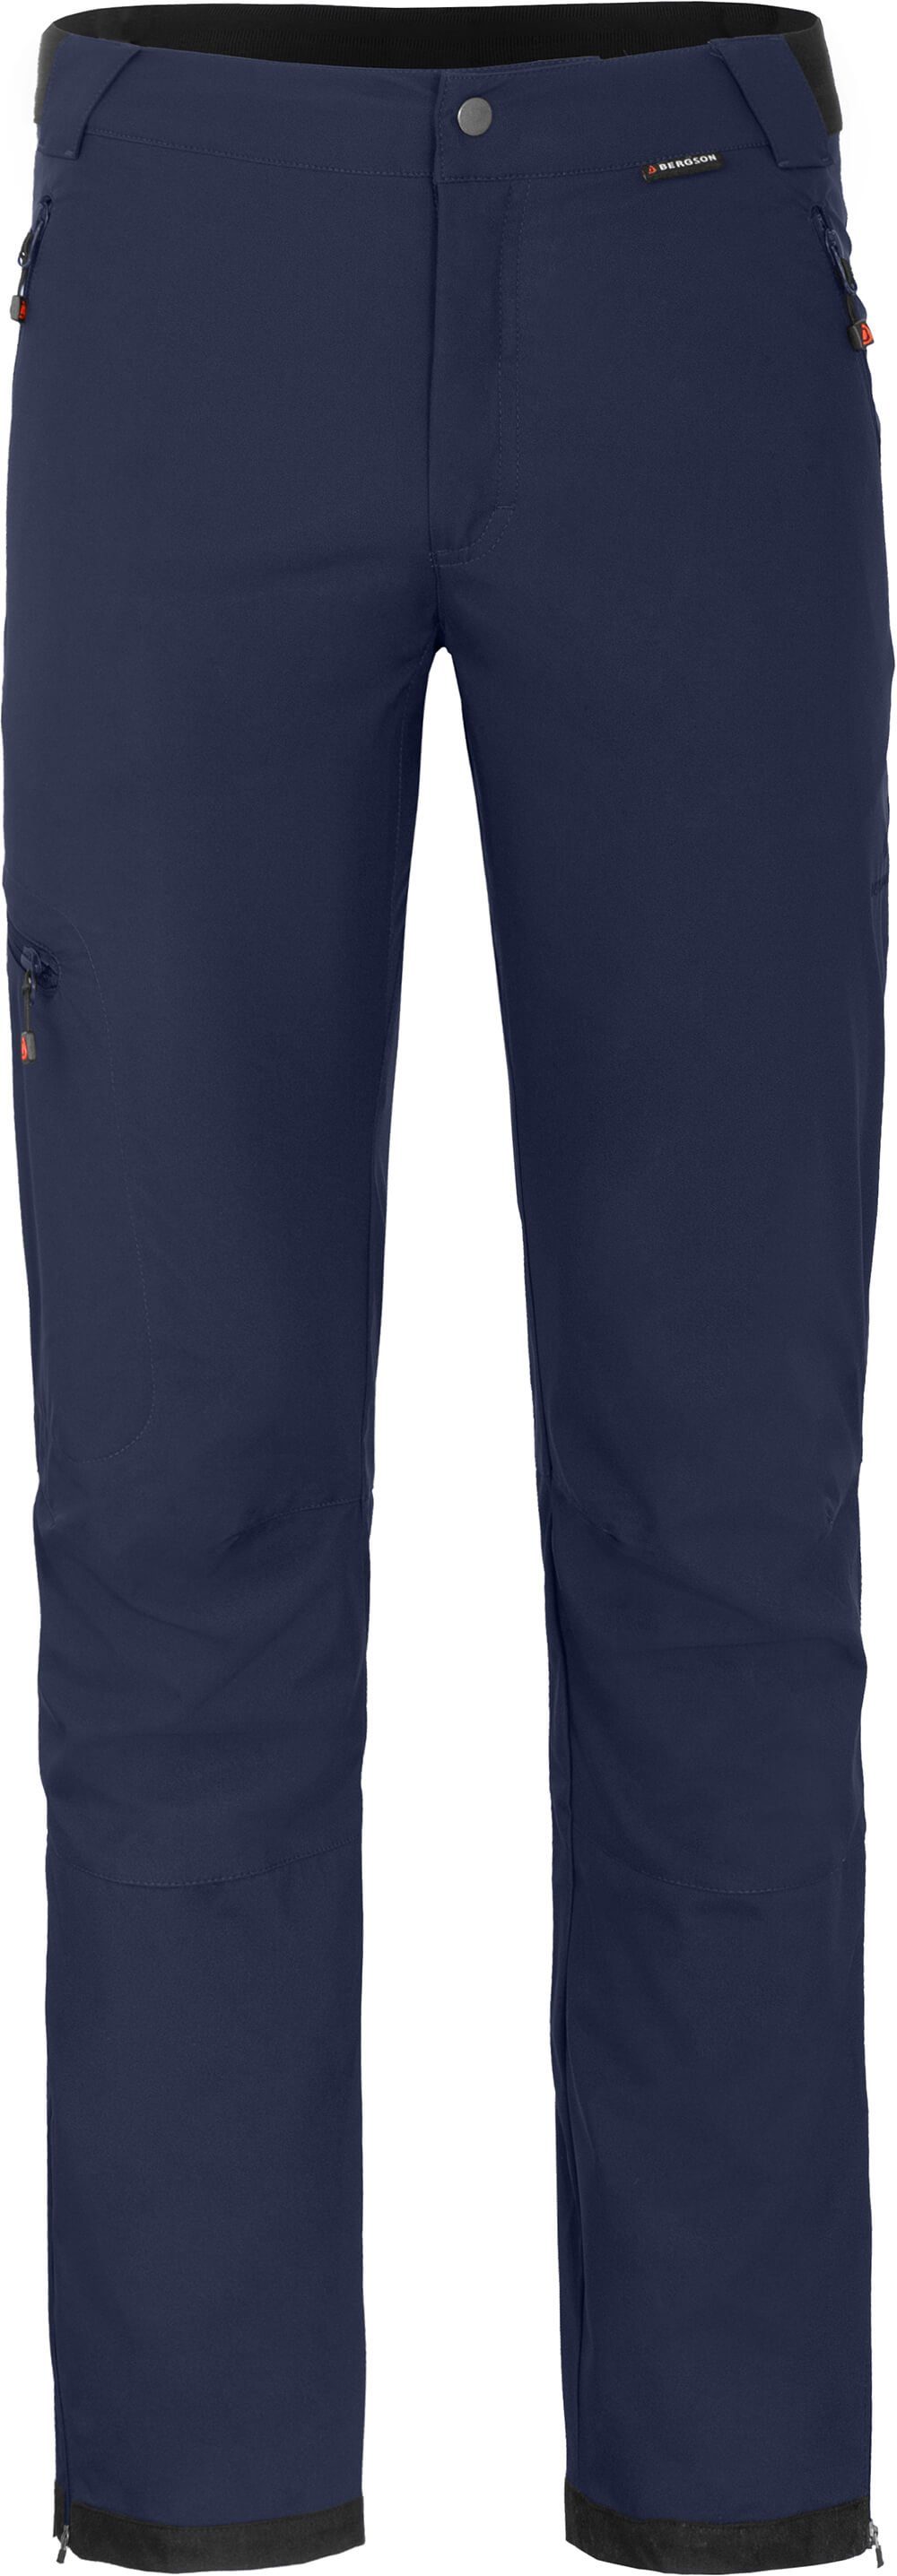 Bergson Outdoorhose KALLE COMFORT Herren Softshellhose, winddicht, strapazierfähig, Langgrößen, peacoat blau | Shorts